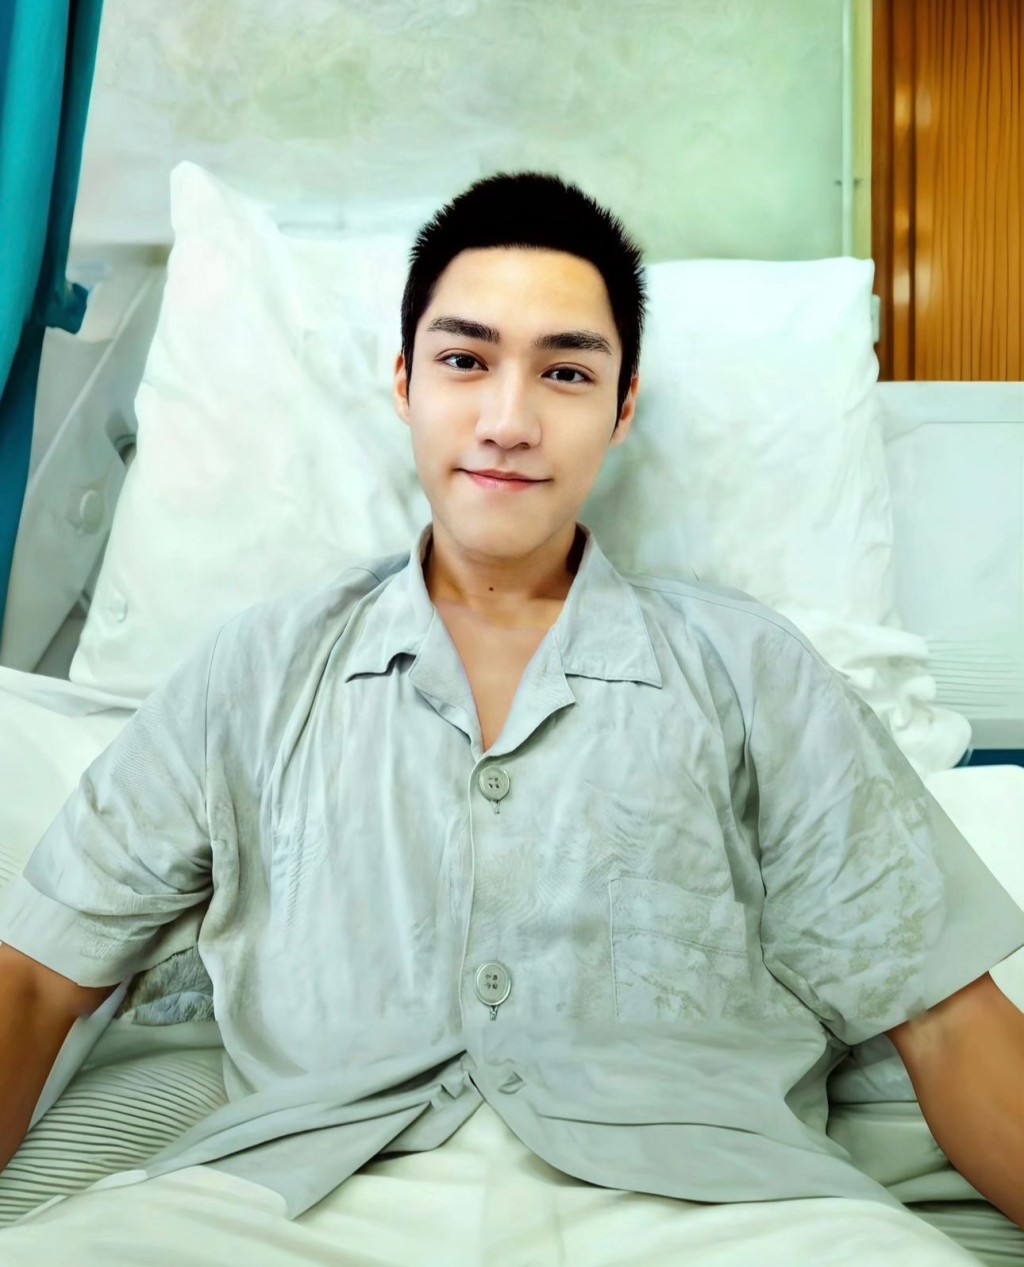 文頌男亦有在社交平台發文透露他在醫院：「短期內出唔到院，身體情况好差。」